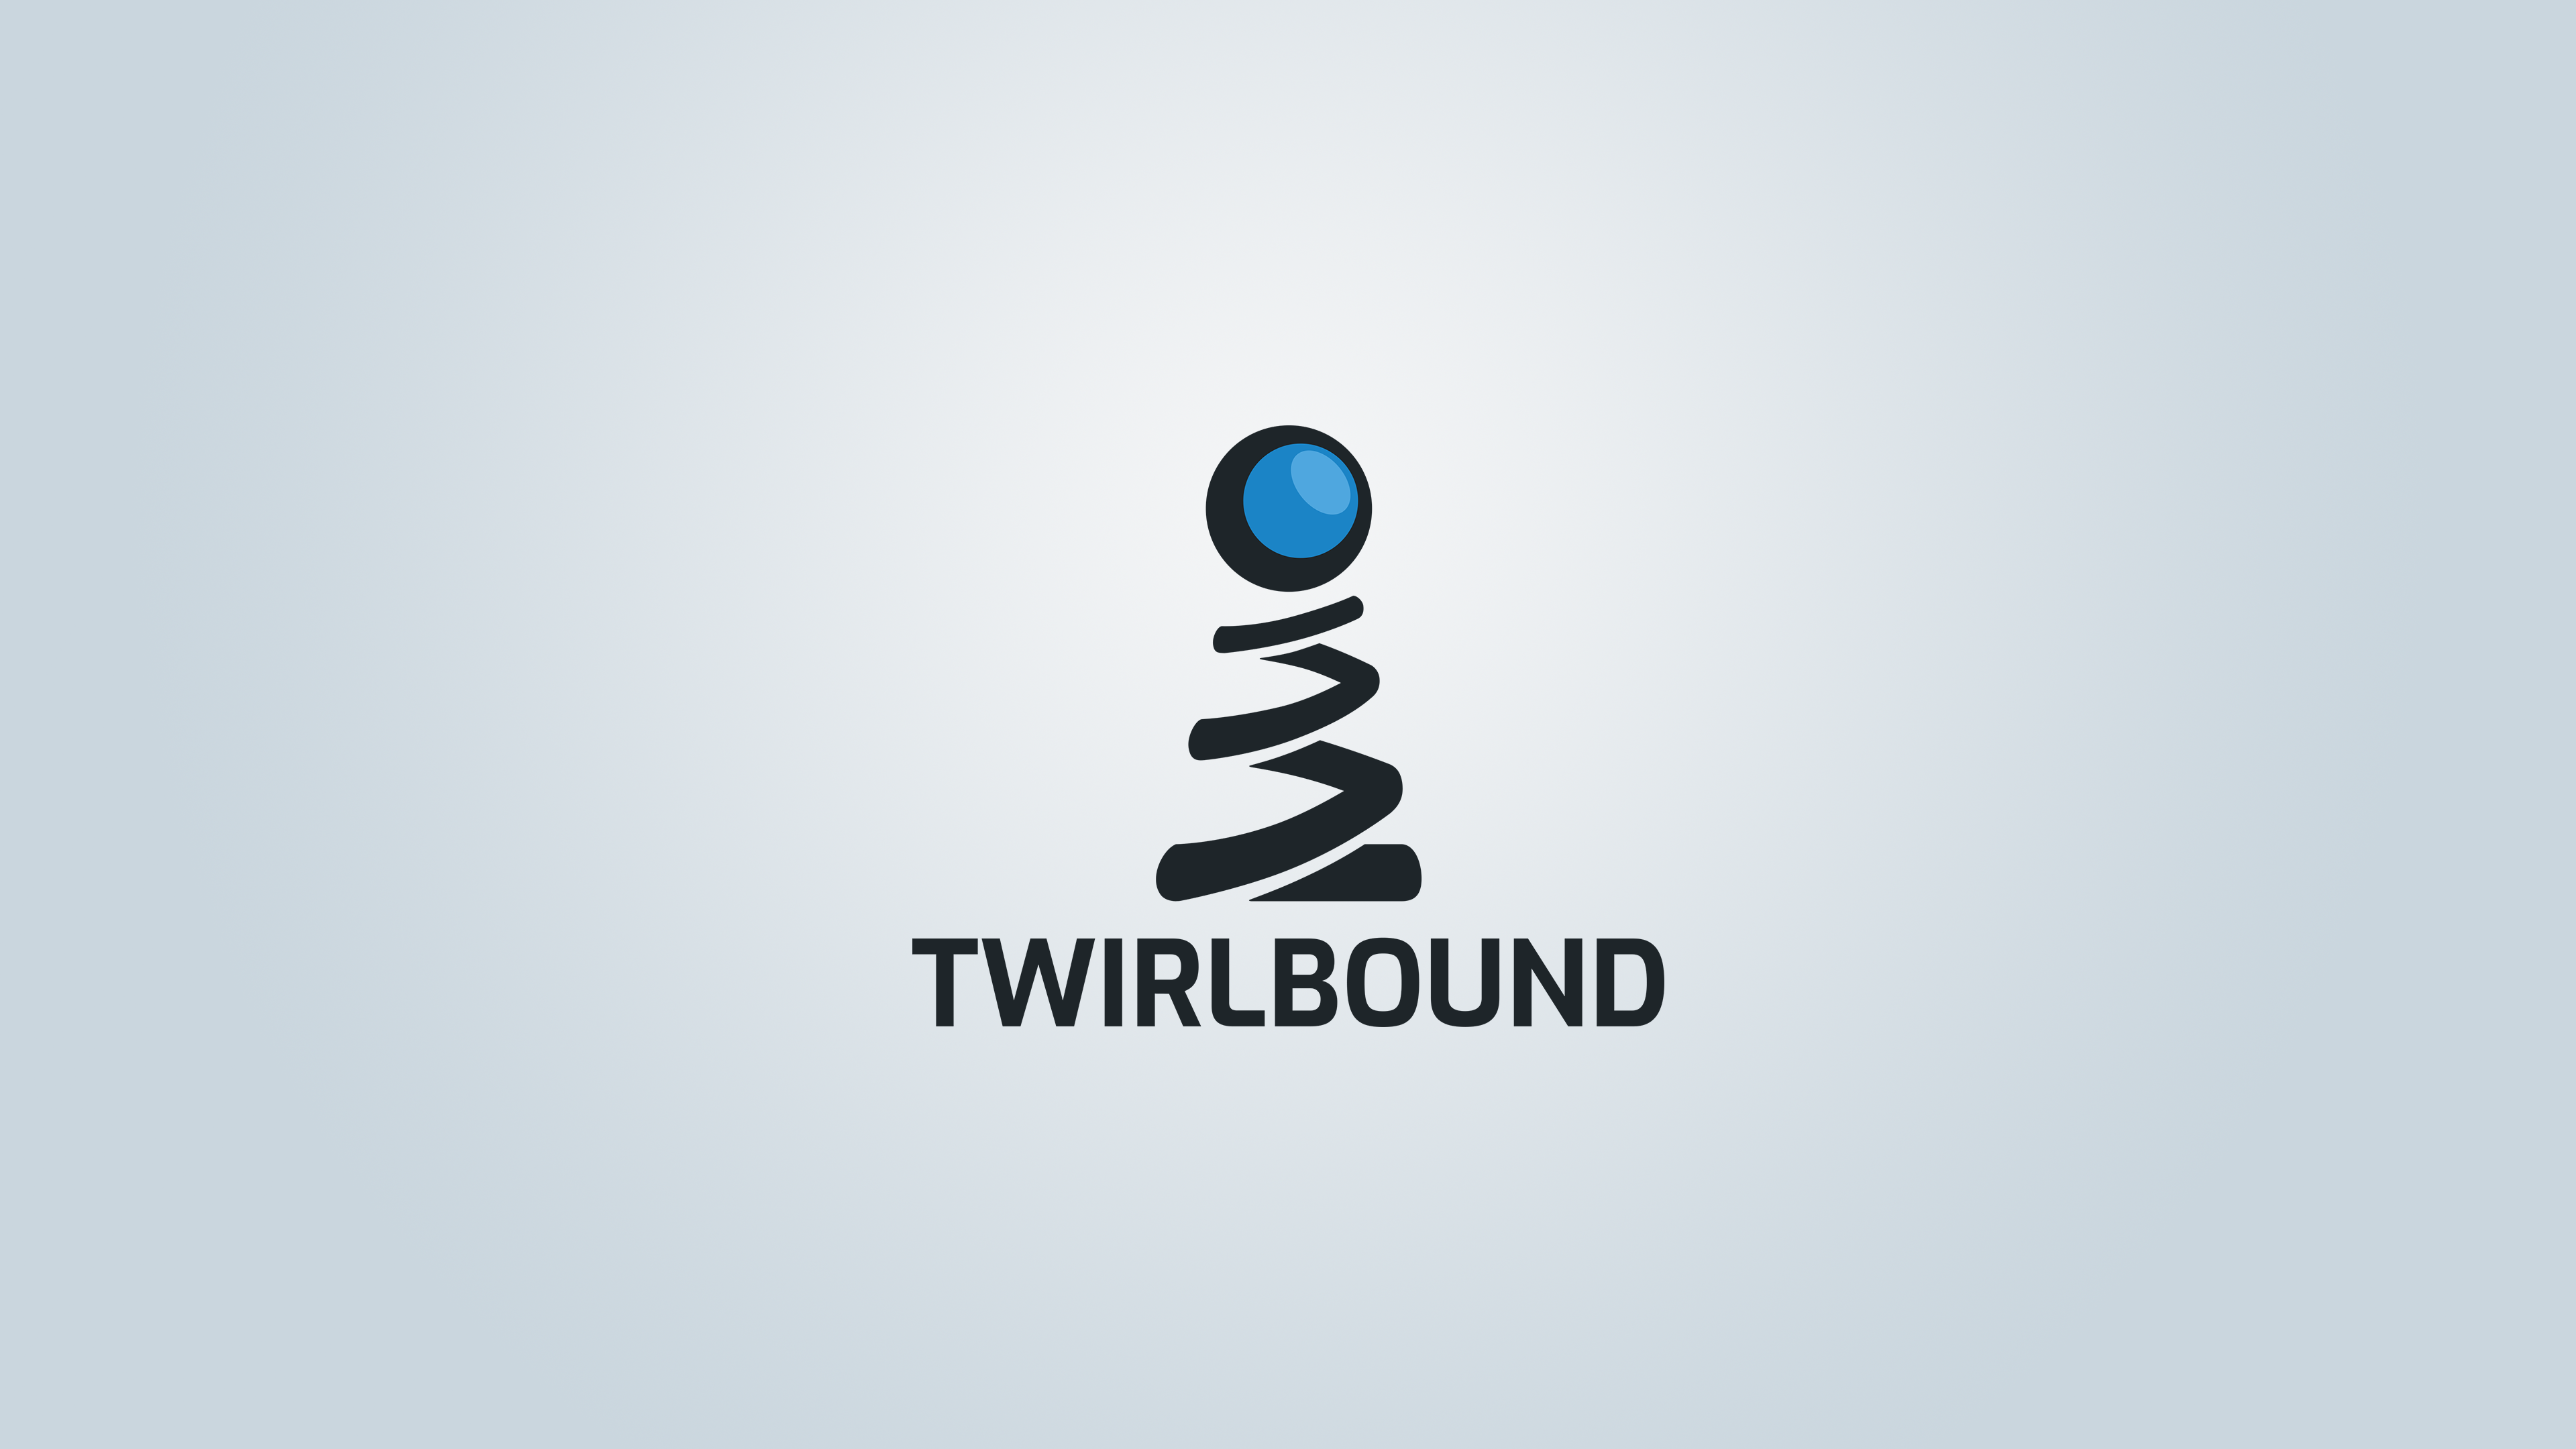 Twirlbound_NormalOnLight_3840x2160.png